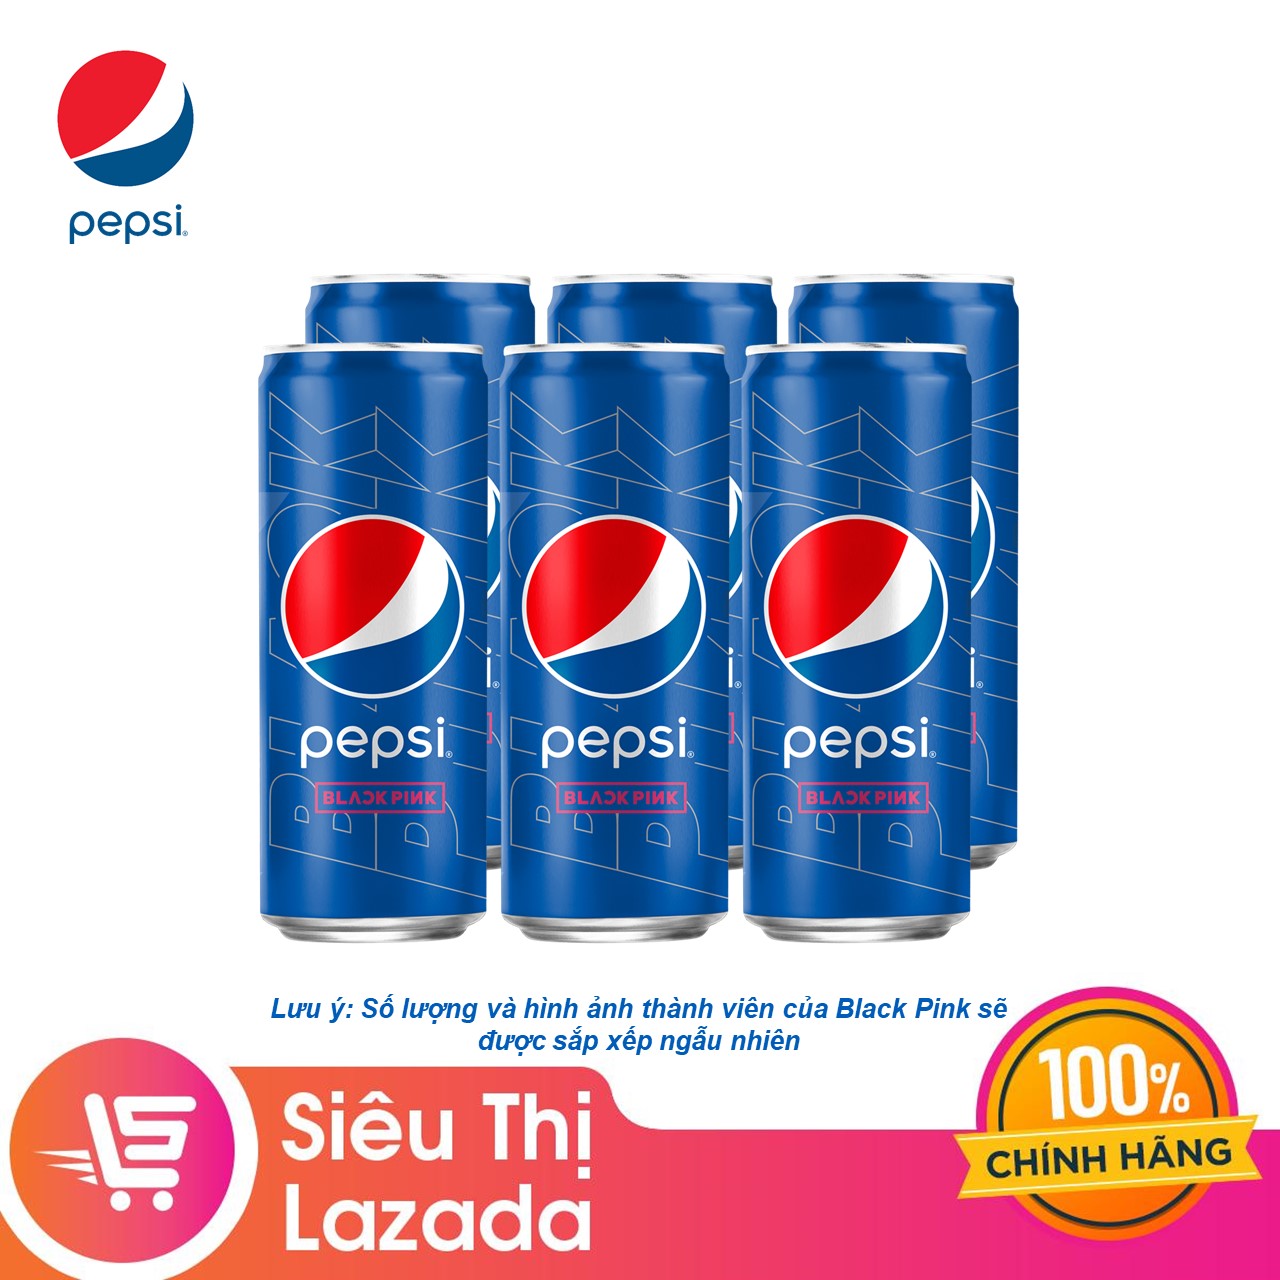 Lốc 6 lon Pepsi Blackpink: Nếu bạn muốn trải nghiệm hương vị thật đặc biệt của Pepsi khi kết hợp với Blackpink, hãy xem những hình ảnh về lốc 6 lon Pepsi Blackpink. Đây sẽ là một trải nghiệm tuyệt vời và đầy thú vị cho bạn.